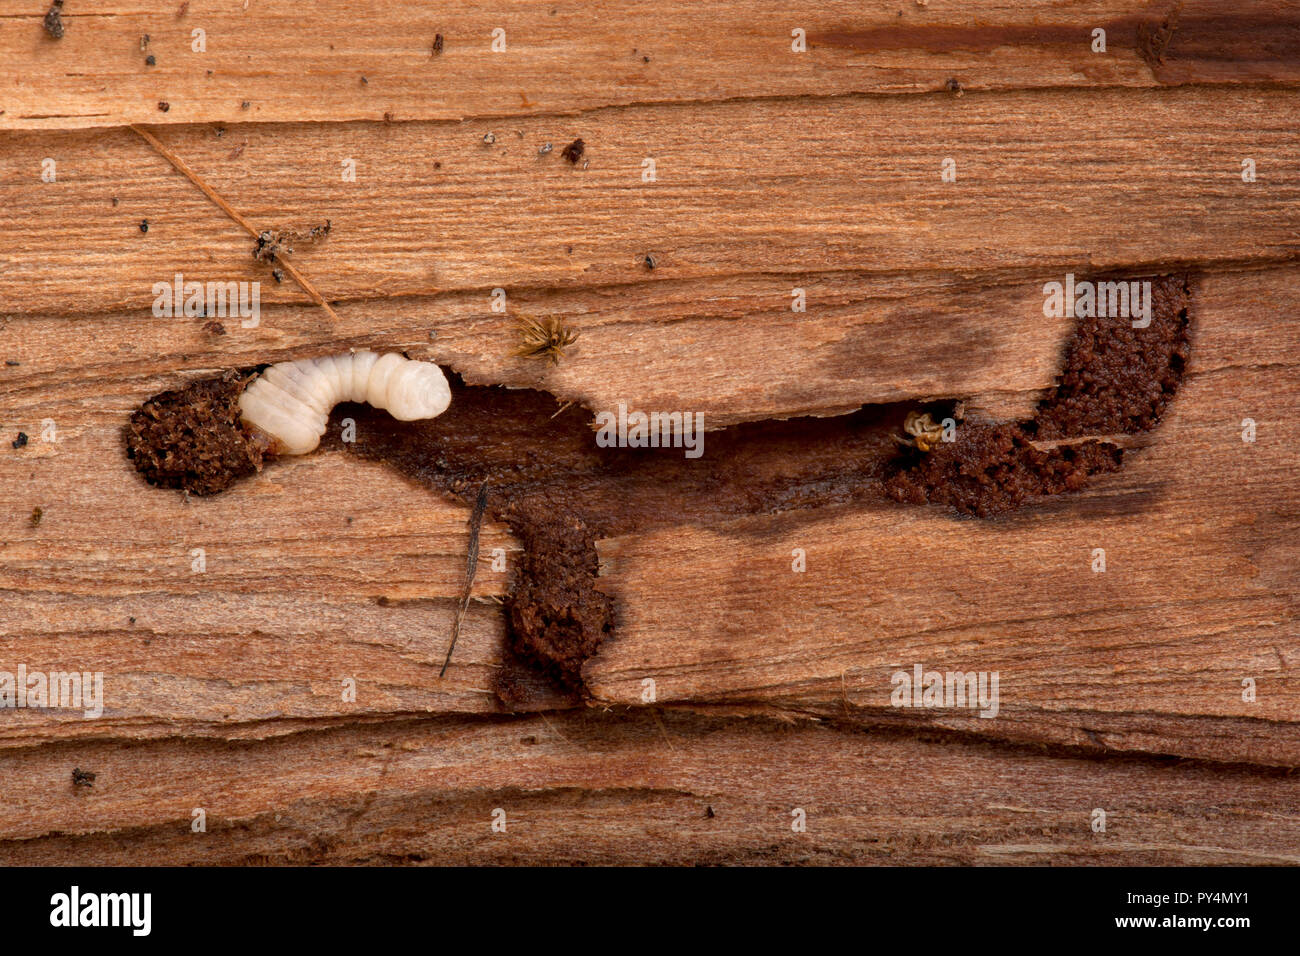 Larve de longicorne, Cerambycidae sp, s'enfouissant dans le bois Banque D'Images